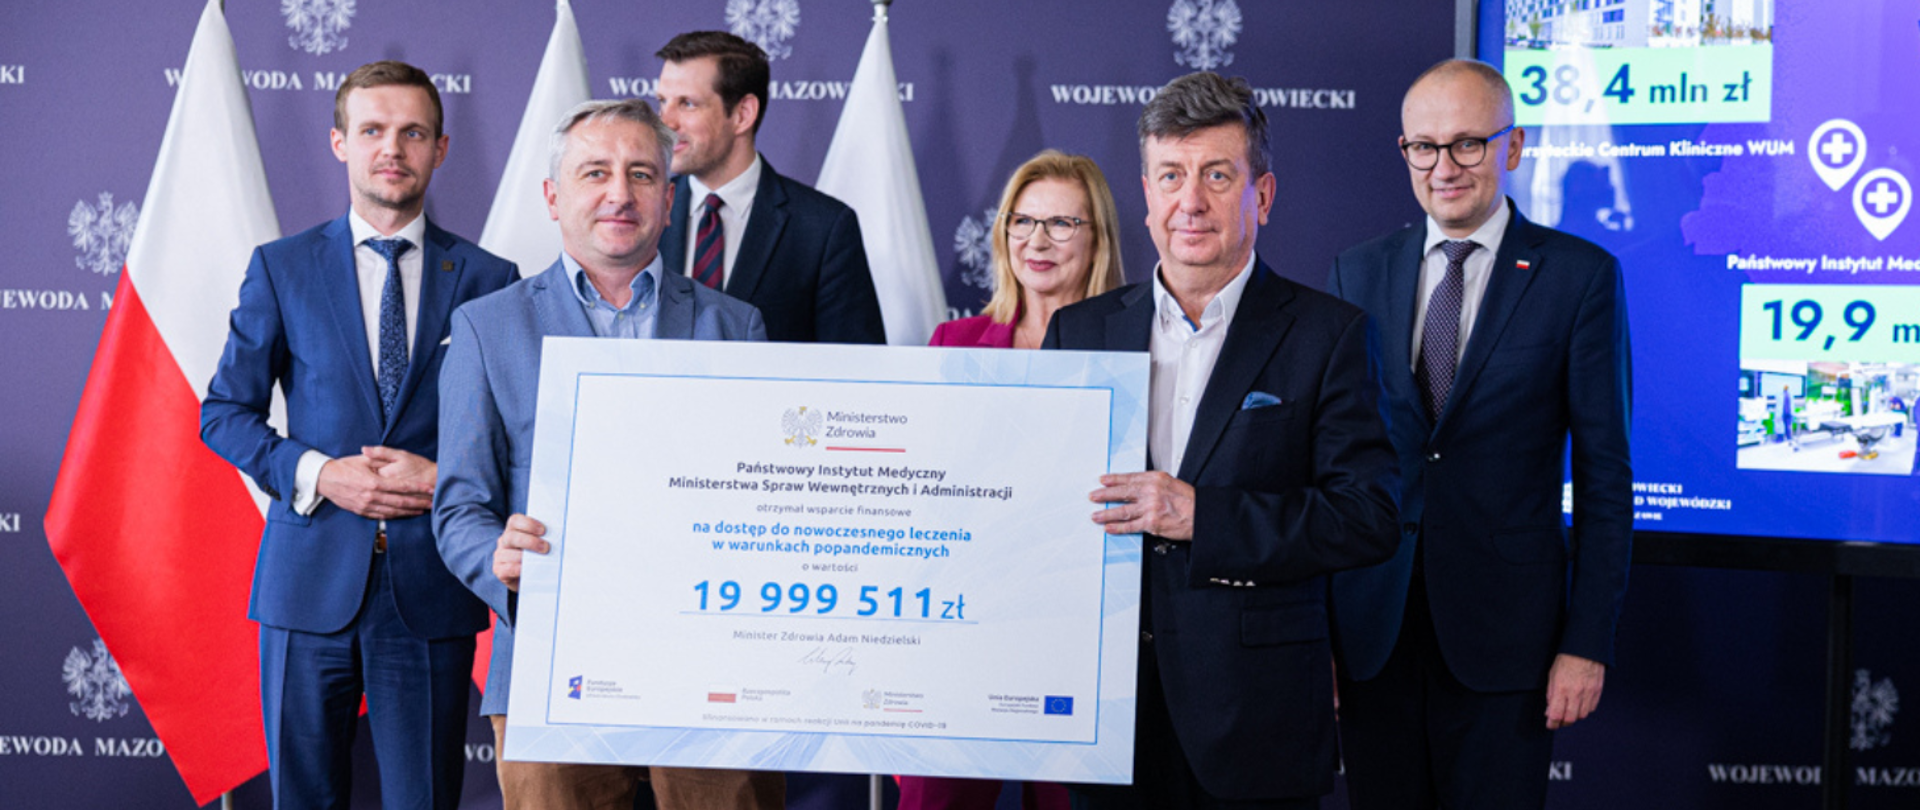 PIM MSWiA beneficjentem konkursu REACT-EU - blisko 20 mln zł dotacji na dostęp do nowoczesnego leczenia w warunkach popandemicznych